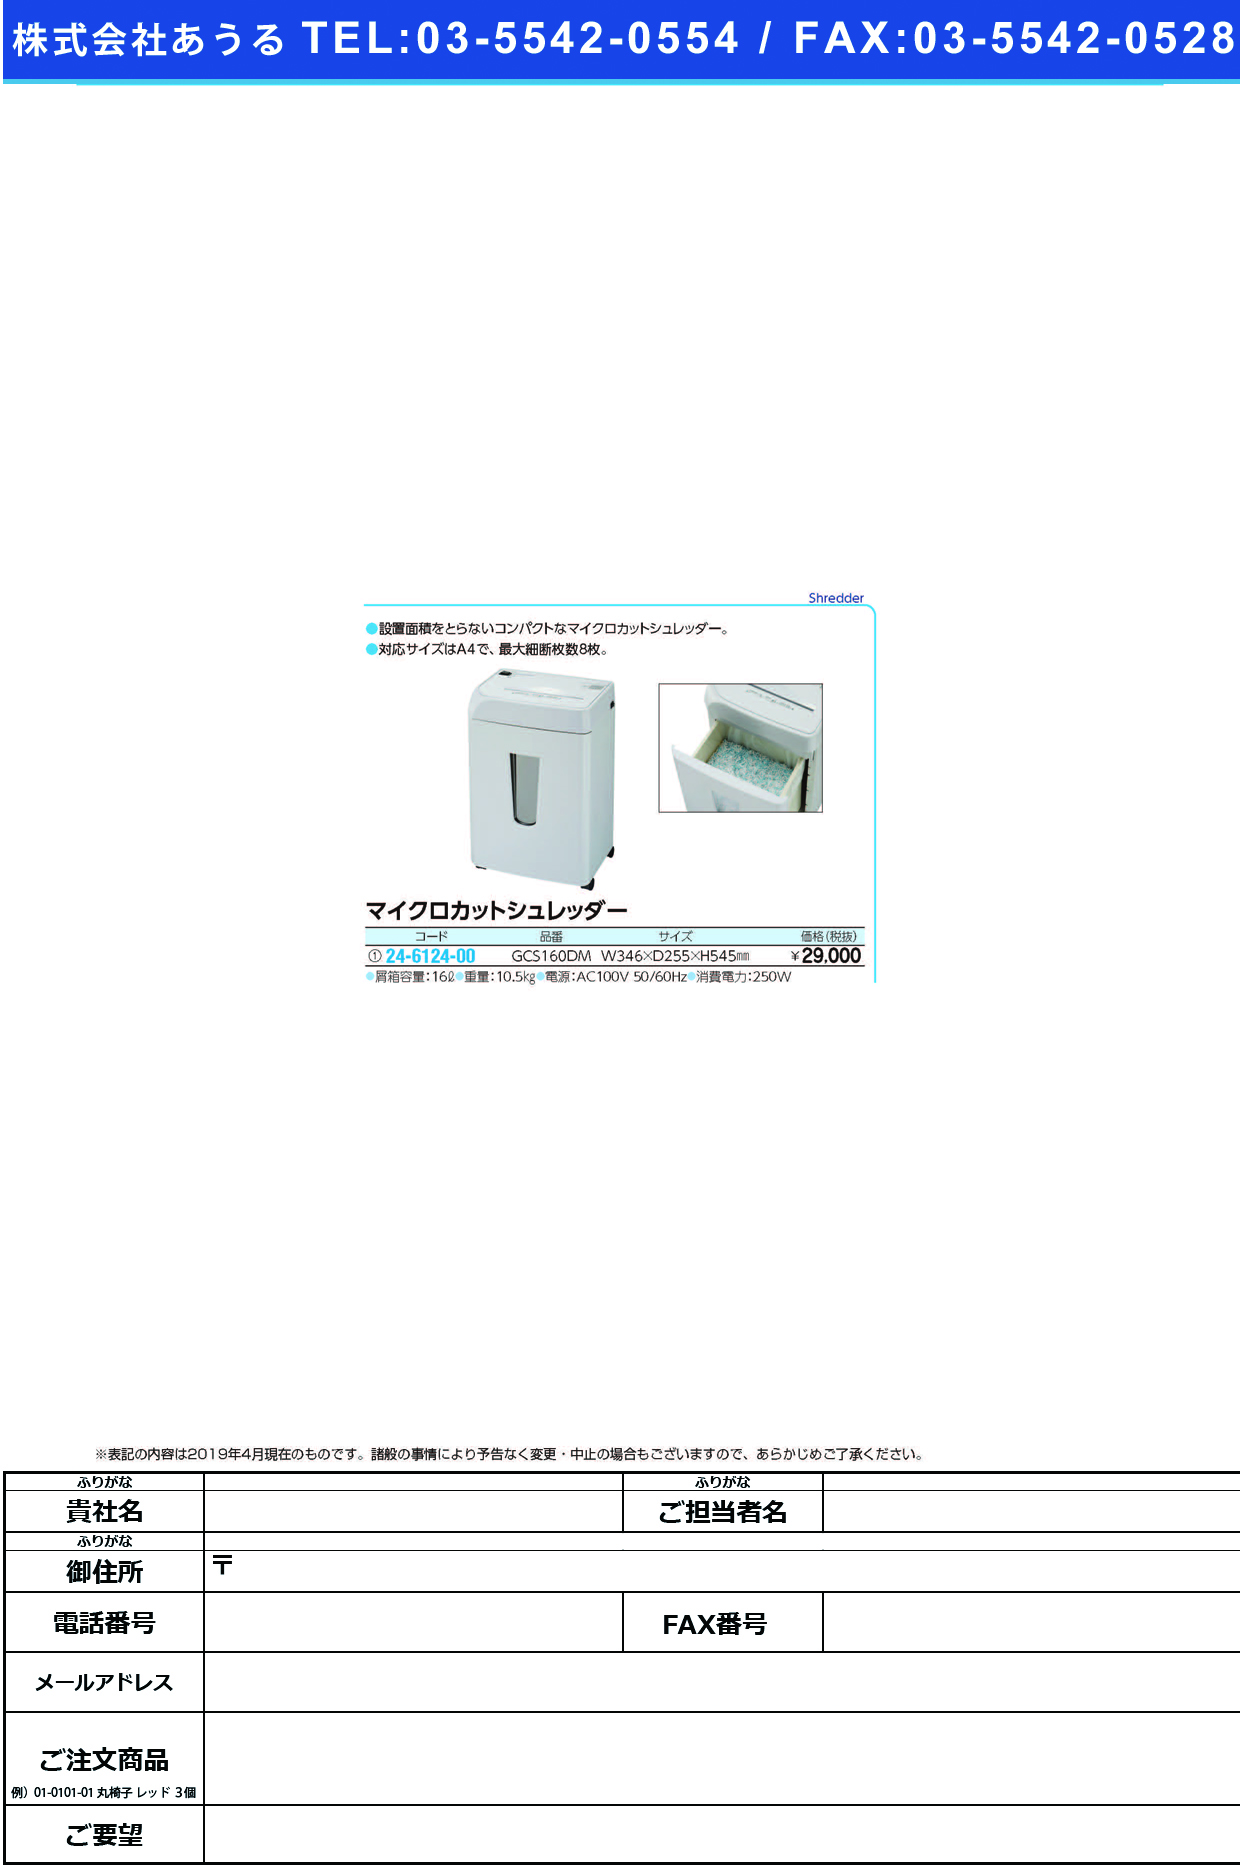 (24-6124-00)マイクロカットシュレッダー GCS160DM ﾏｲｸﾛｶｯﾄｼｭﾚｯﾀﾞｰ【1台単位】【2019年カタログ商品】